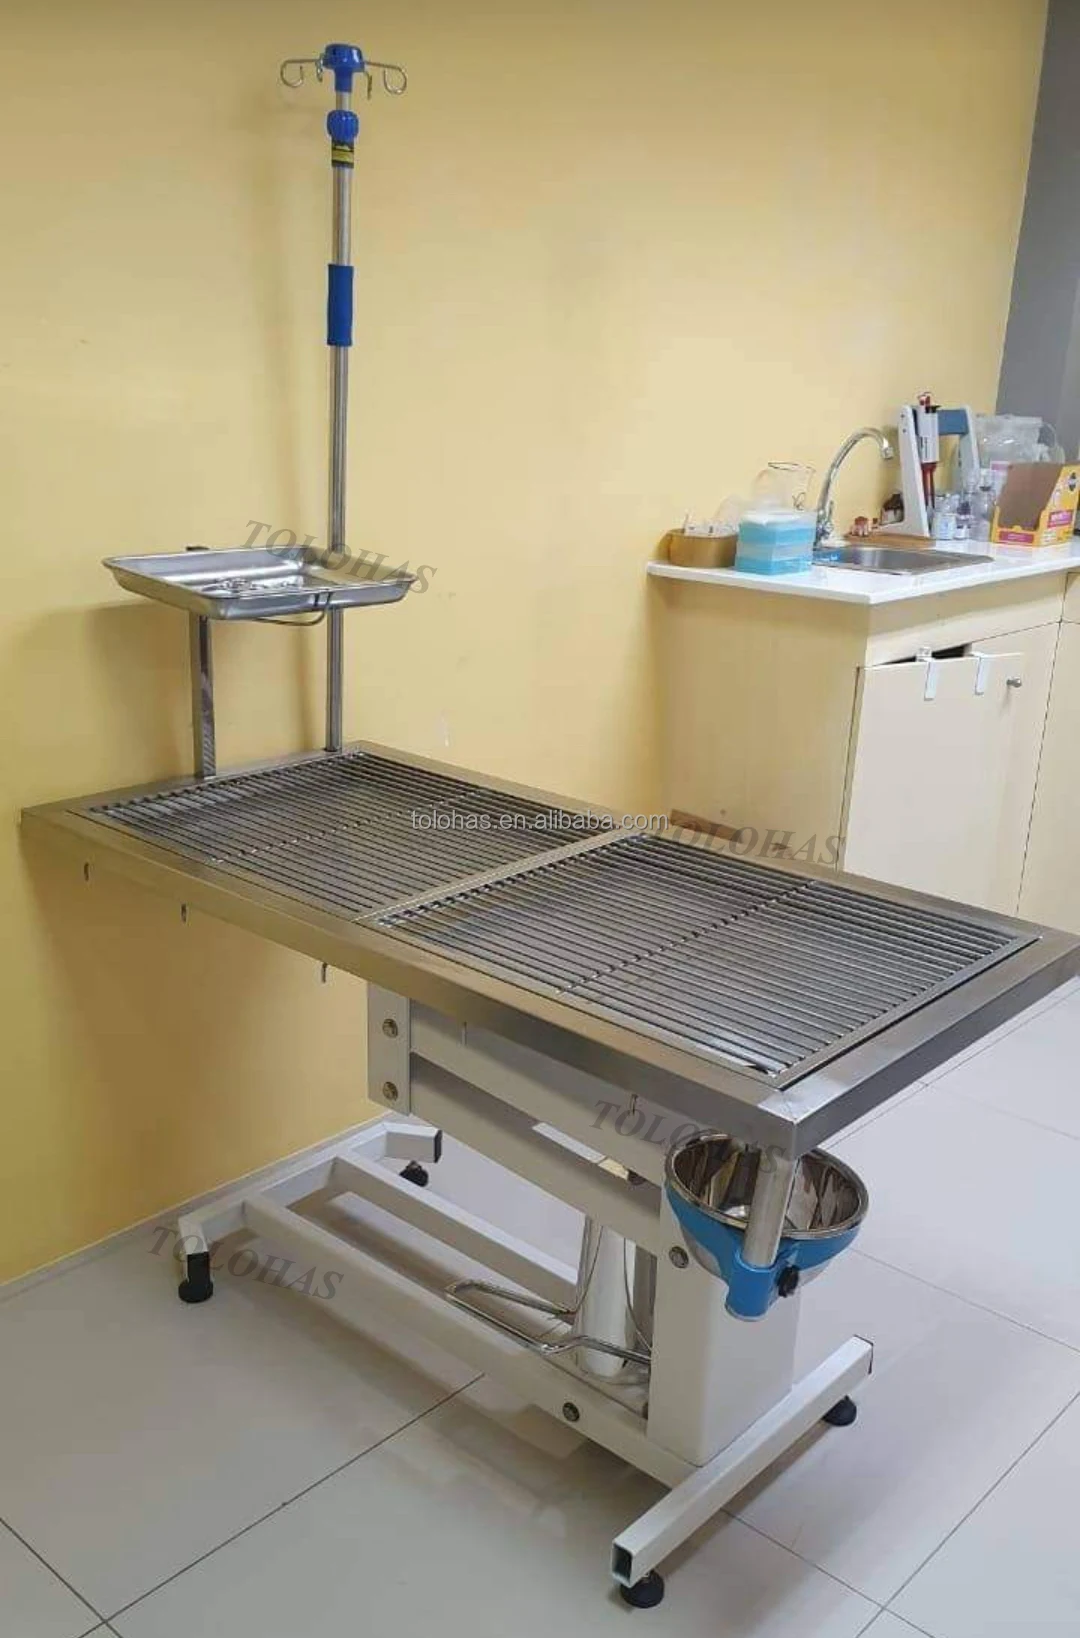 LHST606 ветеринарный хирургический стол 304 стол из нержавеющей стали для осмотра пациента стол для осмотра животных